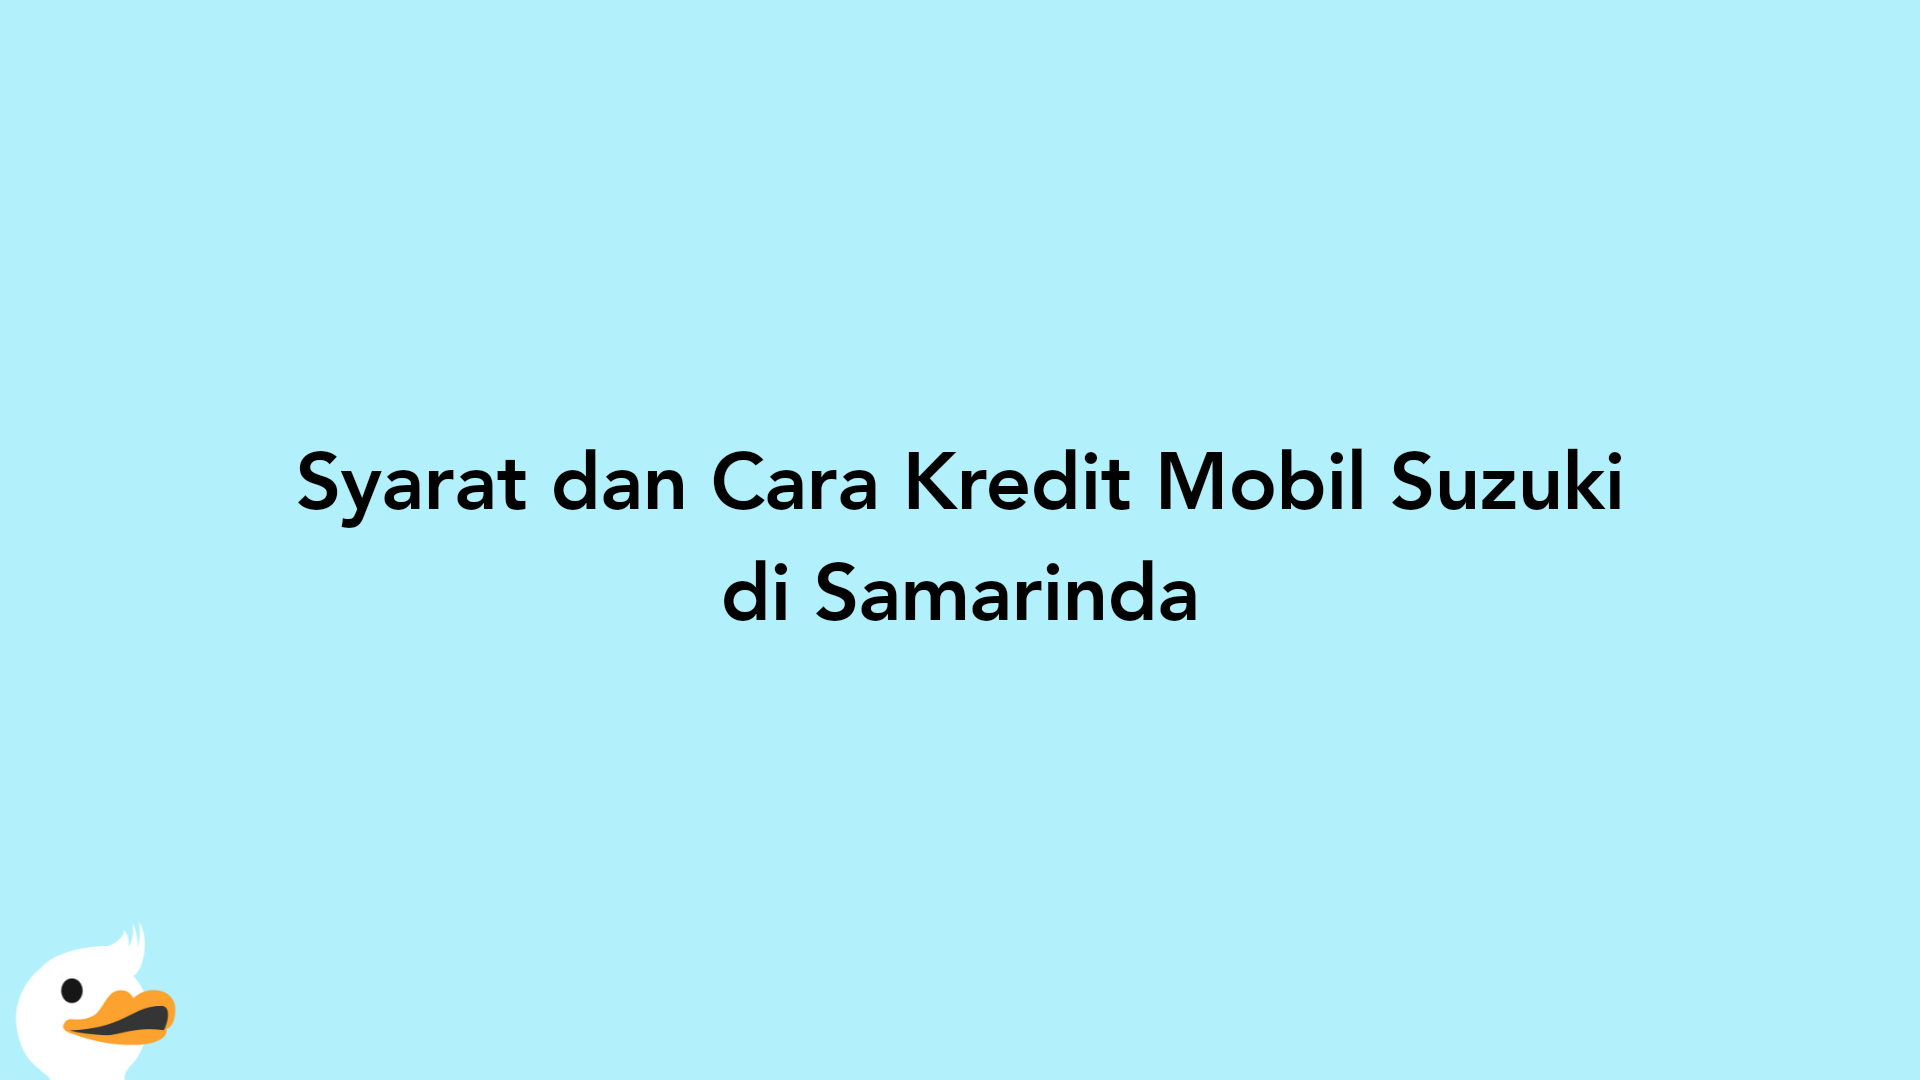 Syarat dan Cara Kredit Mobil Suzuki di Samarinda